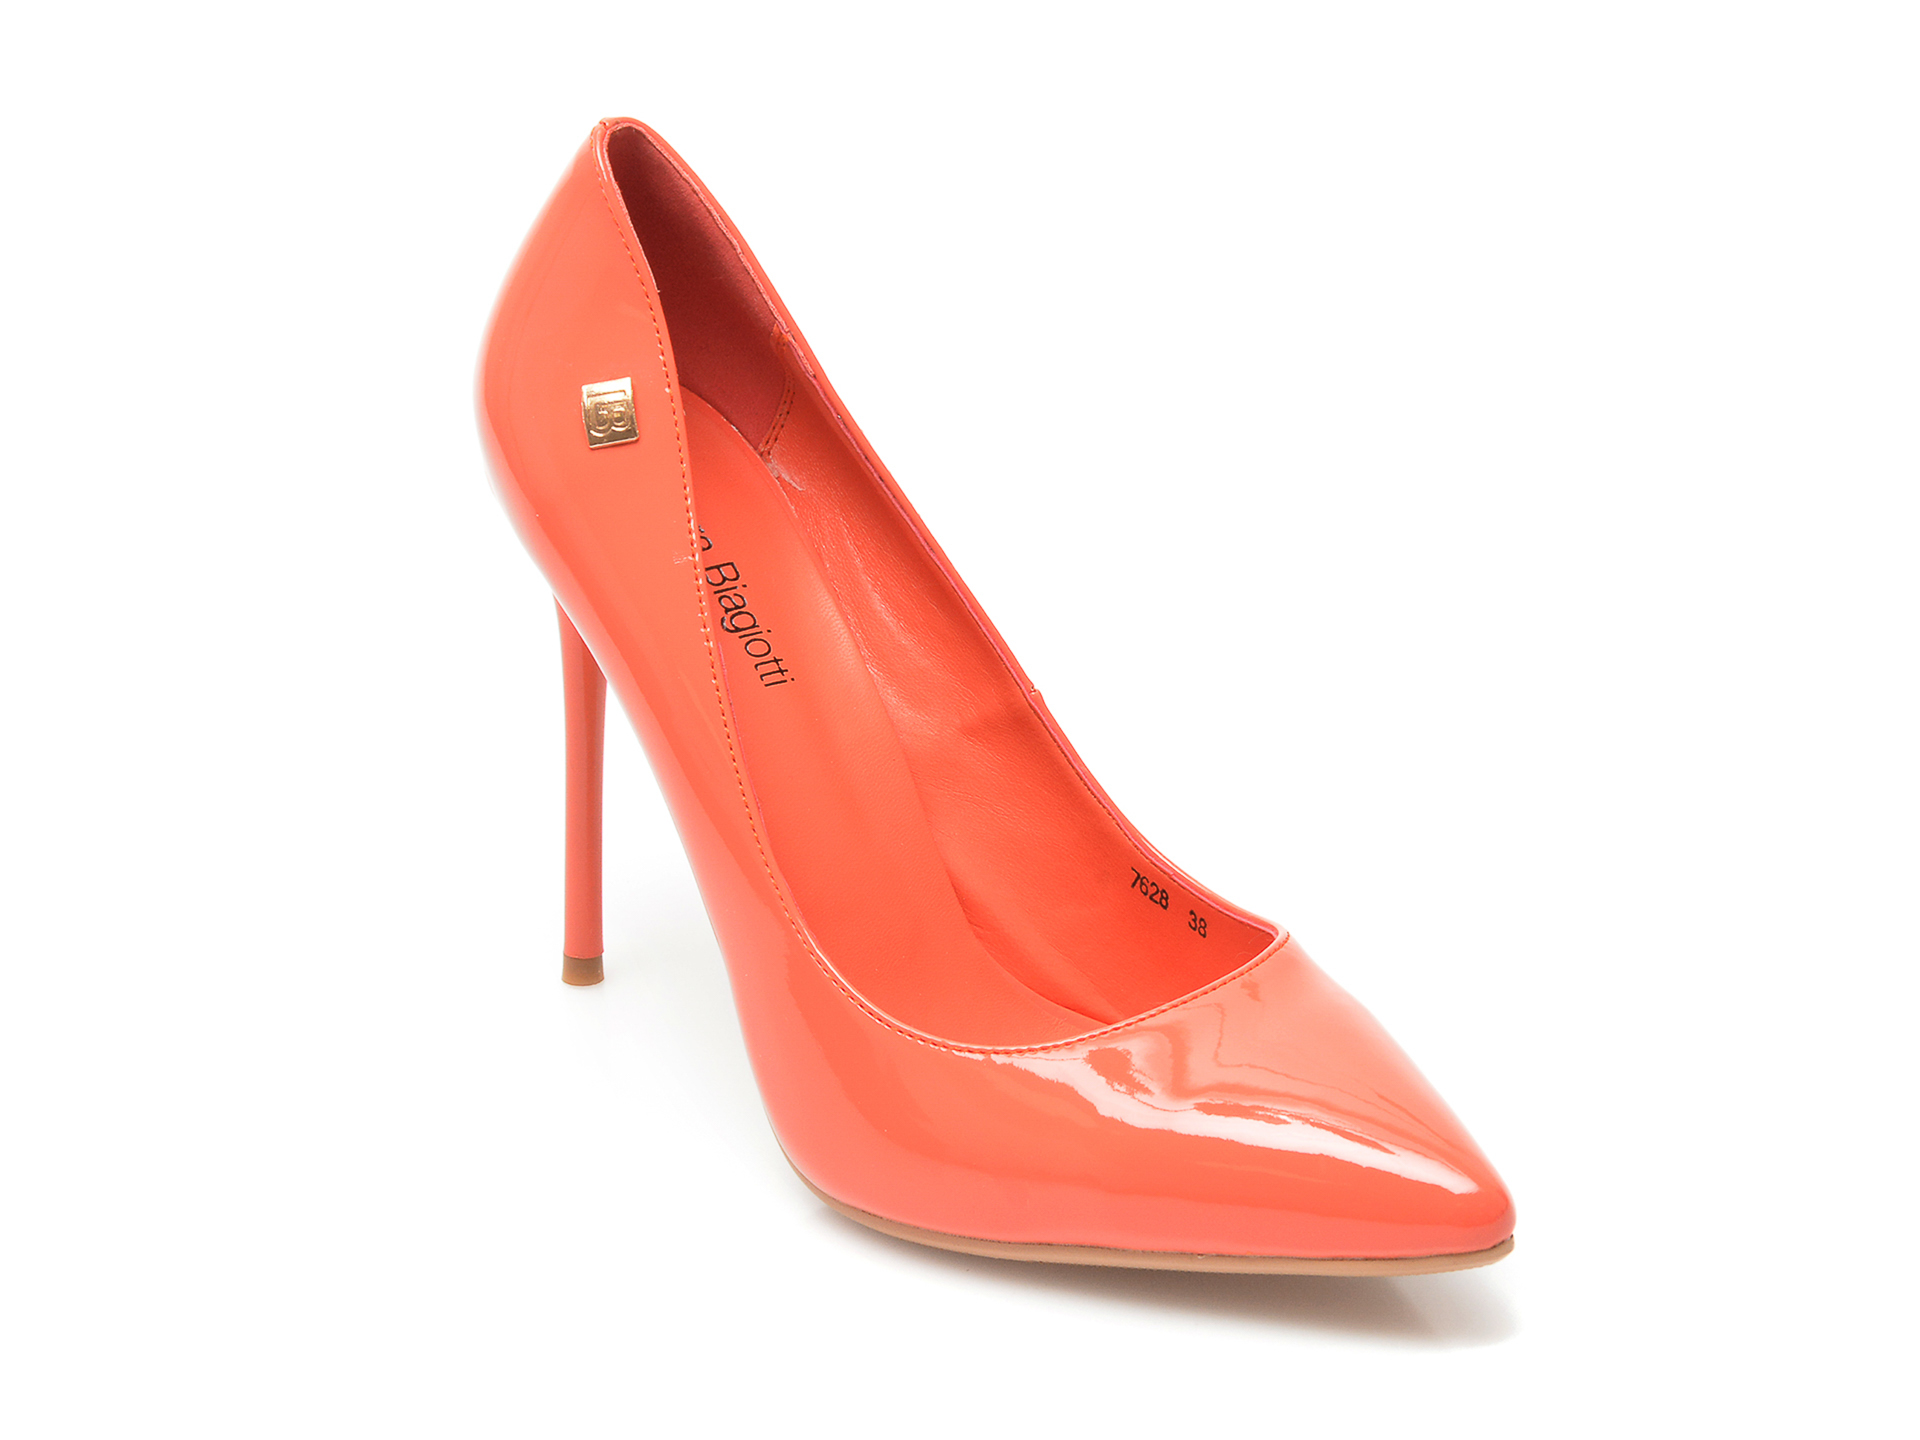 Pantofi LAURA BIAGIOTTI portocalii, 7628, din piele ecologica lacuita Laura Biagiotti imagine 2022 13clothing.ro